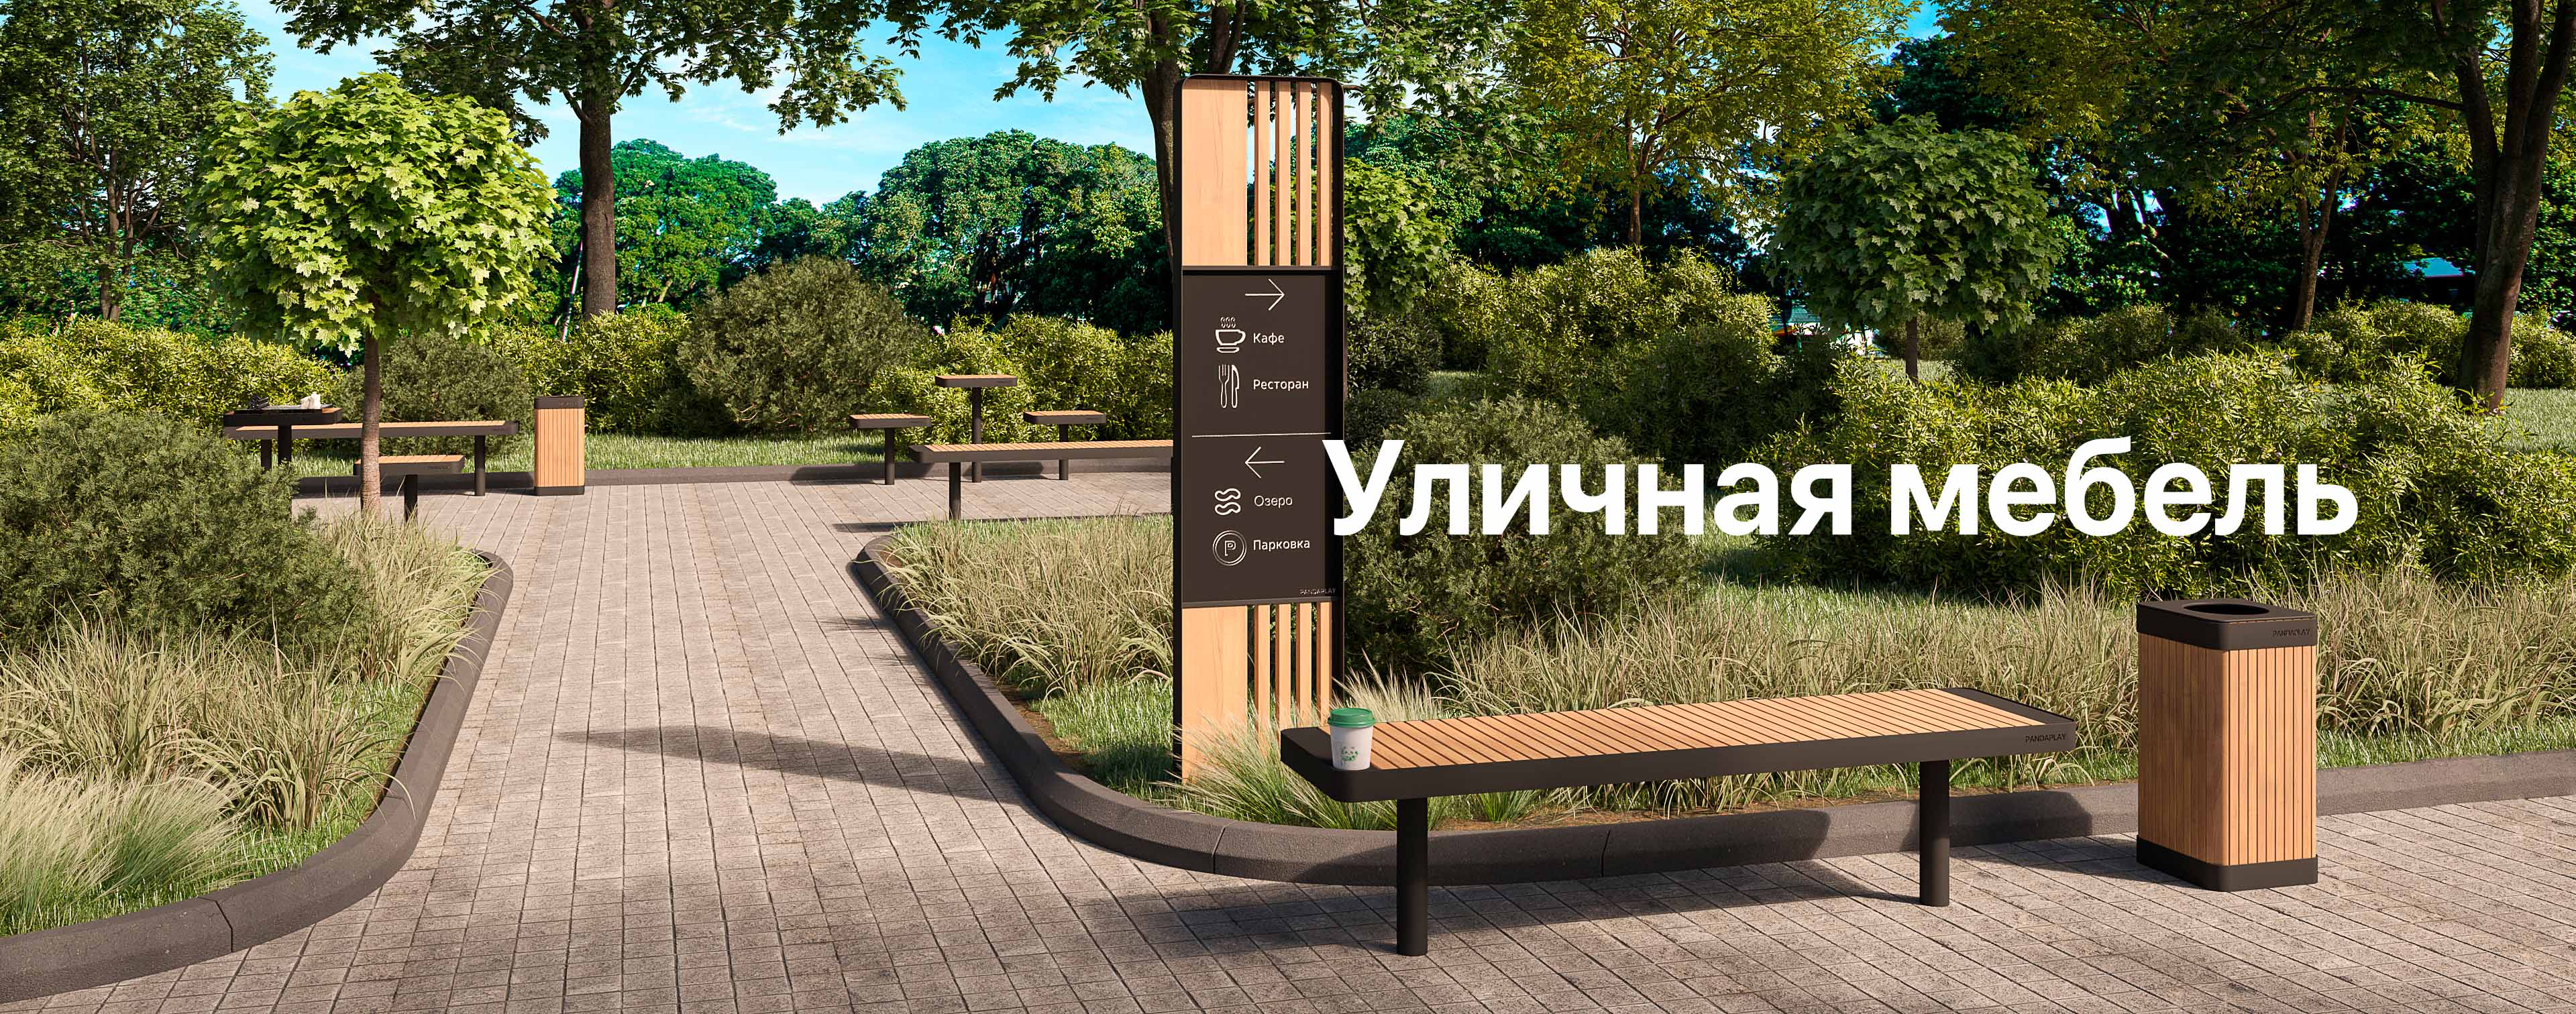 Уличная мебель в Ростове-на-Дону